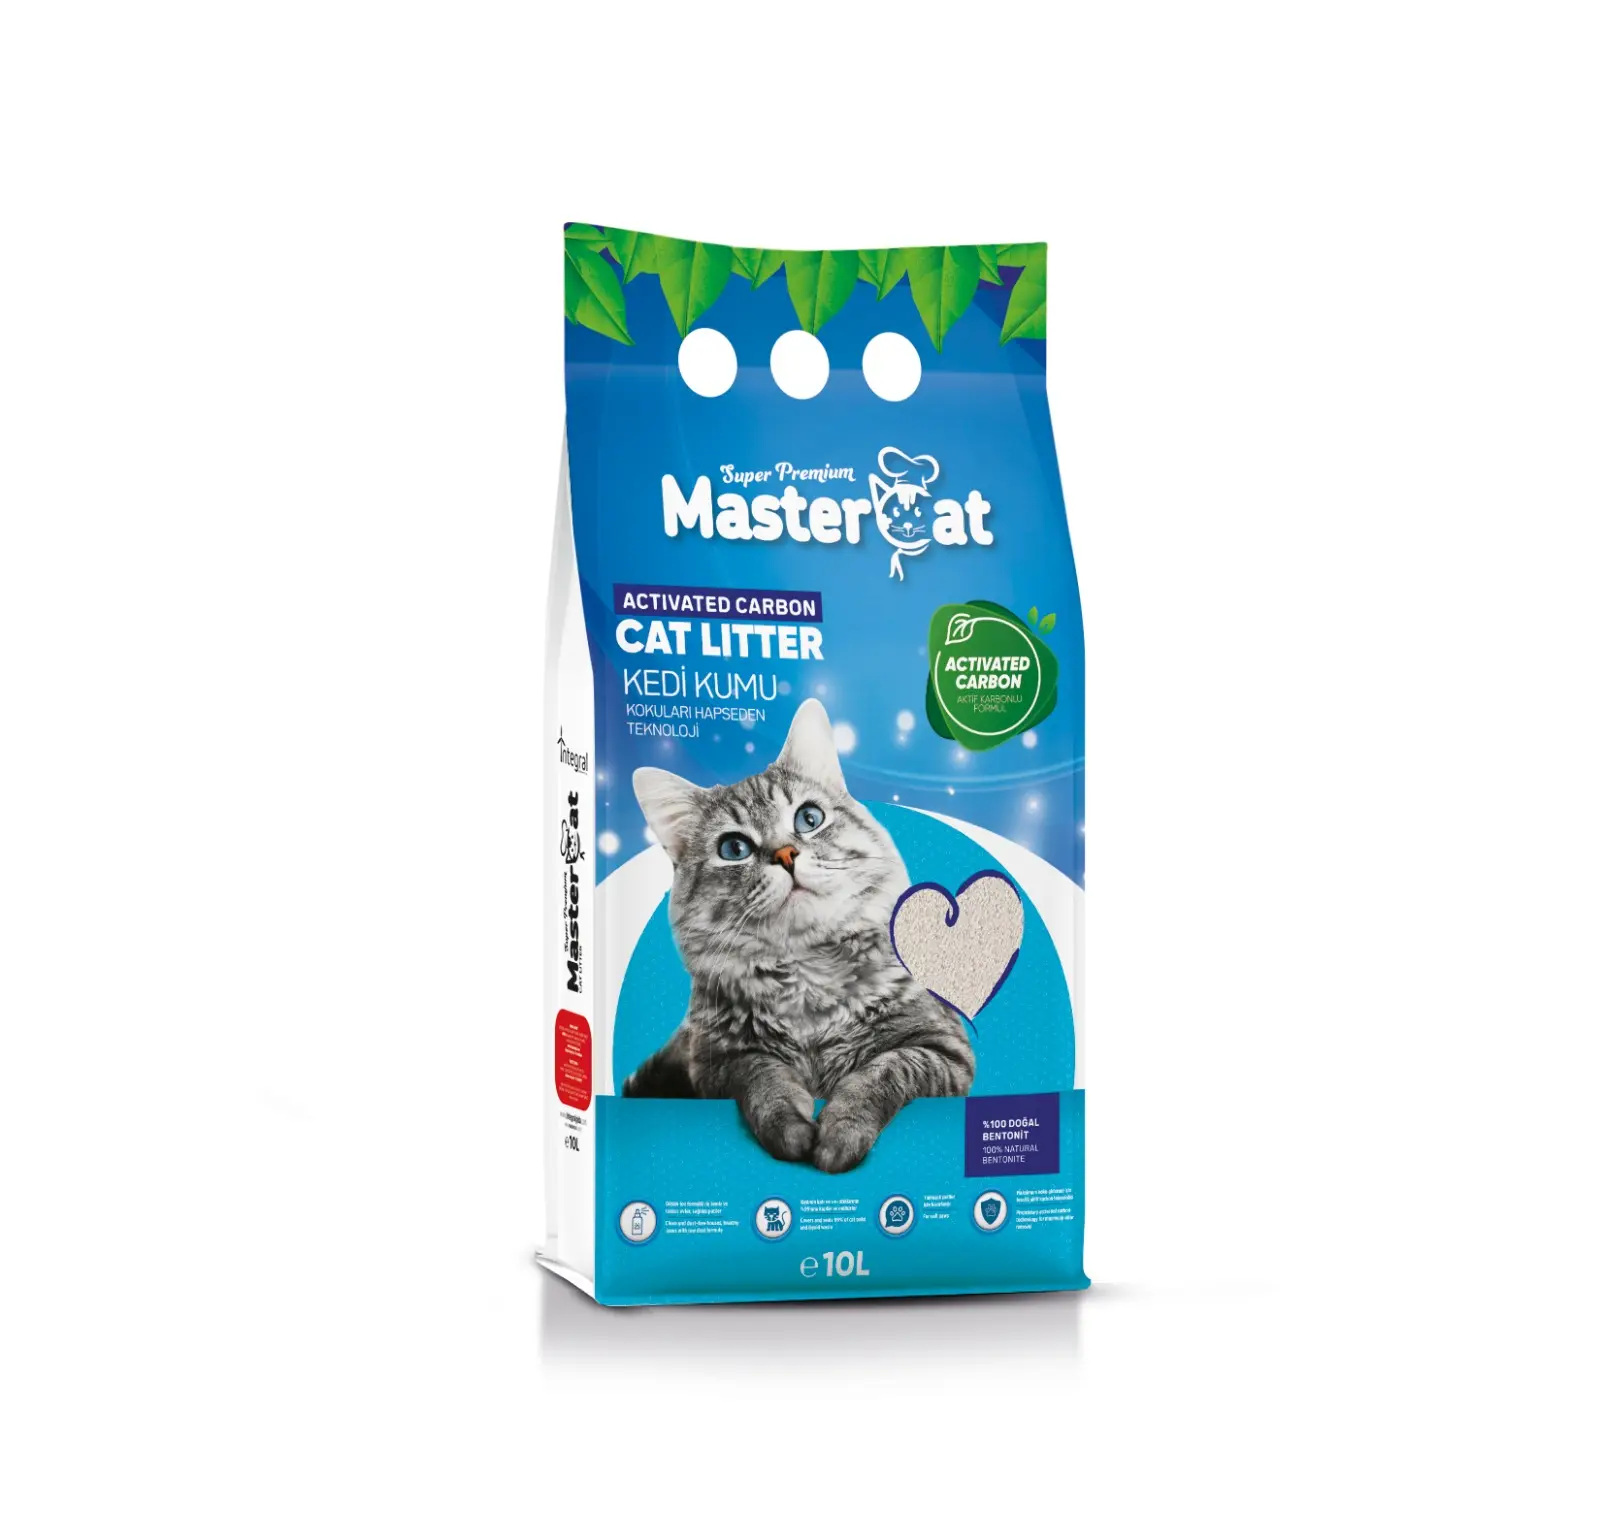 Toptan MasterCat yüksek kalite kedi kumu güçlü topaklanma özelliği ile hızlı aktif karbon bentonit kum